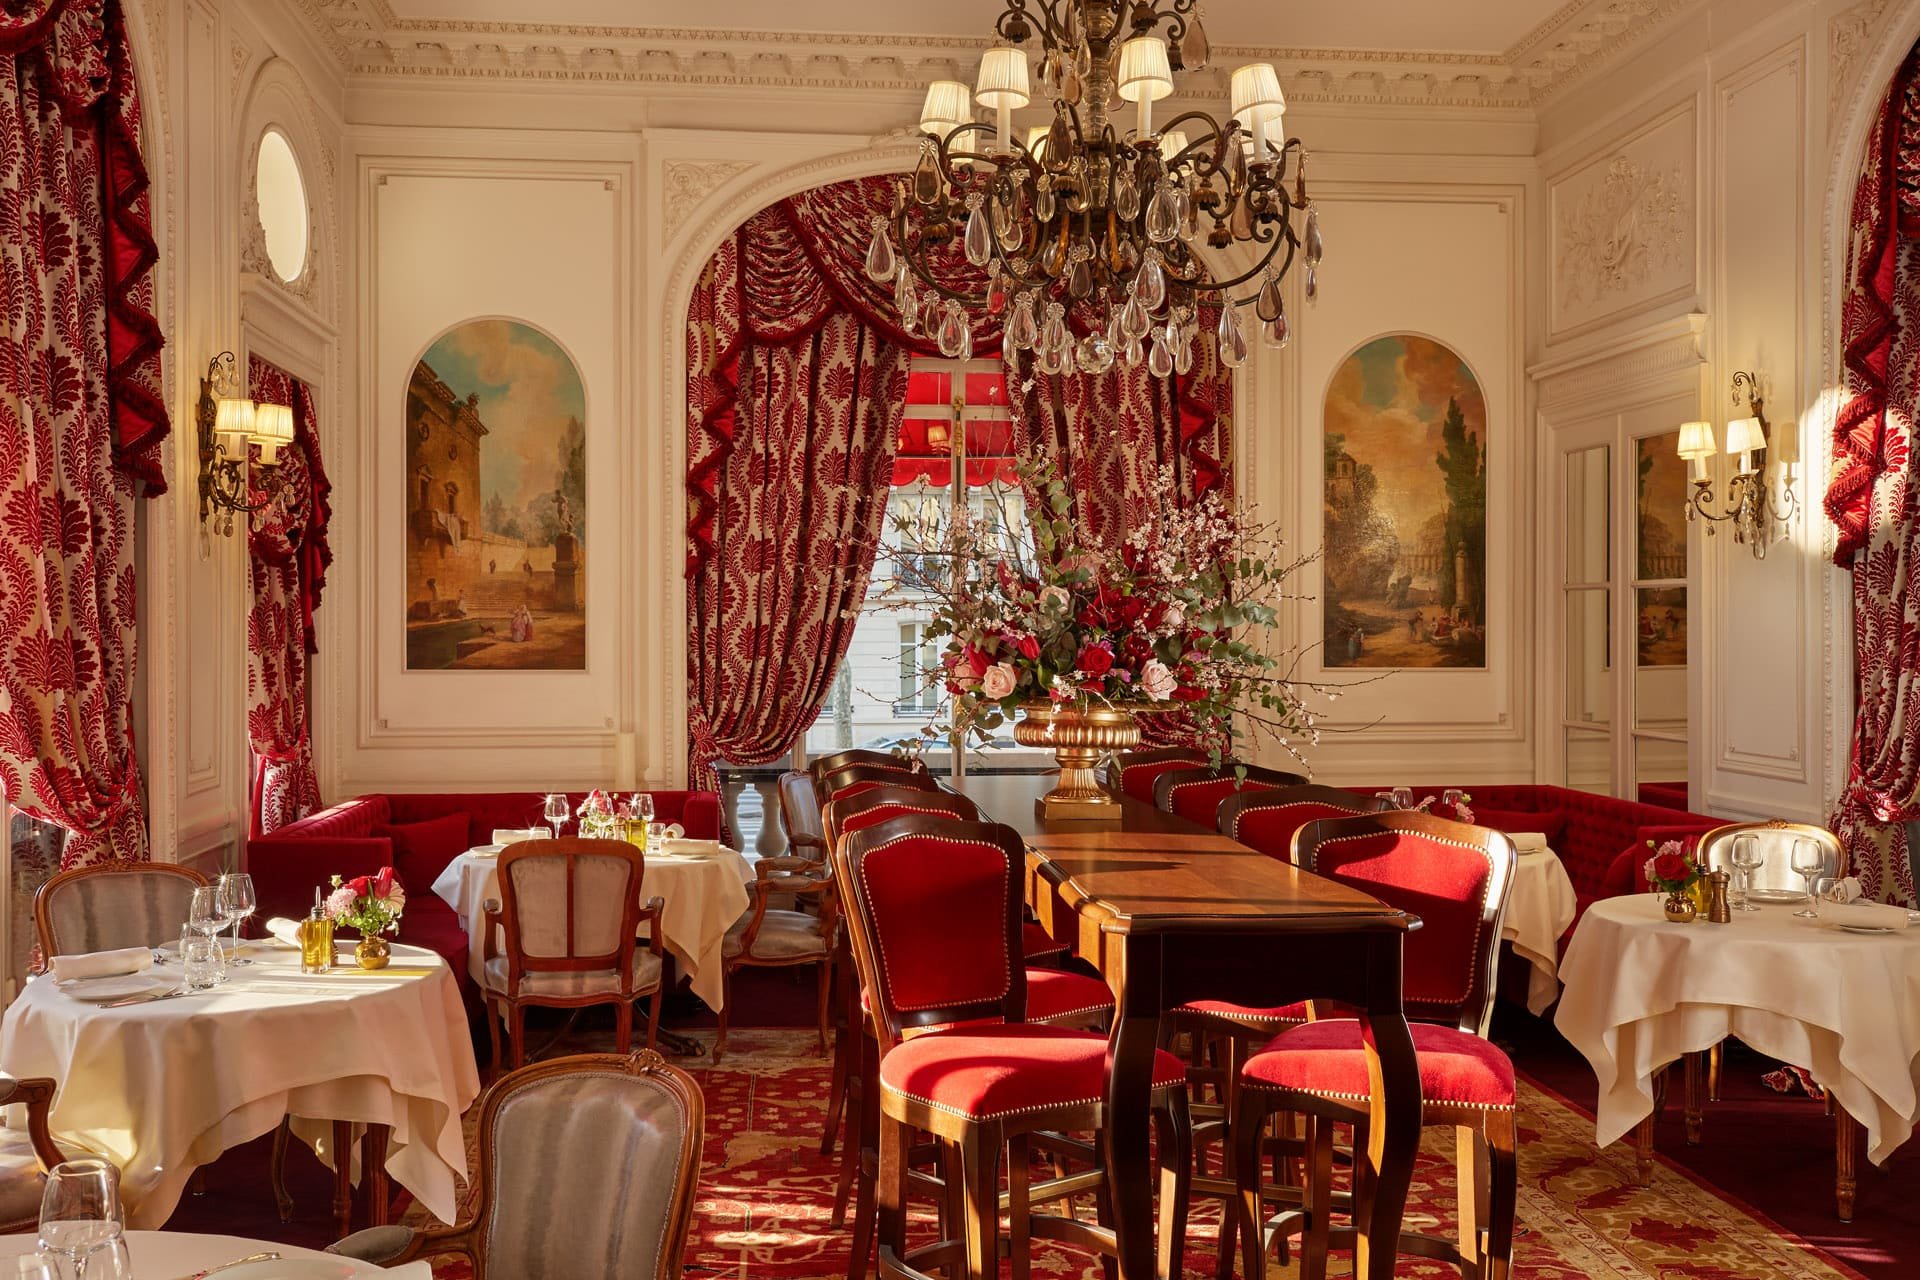 Hôtel Raphael Paris - Restaurant